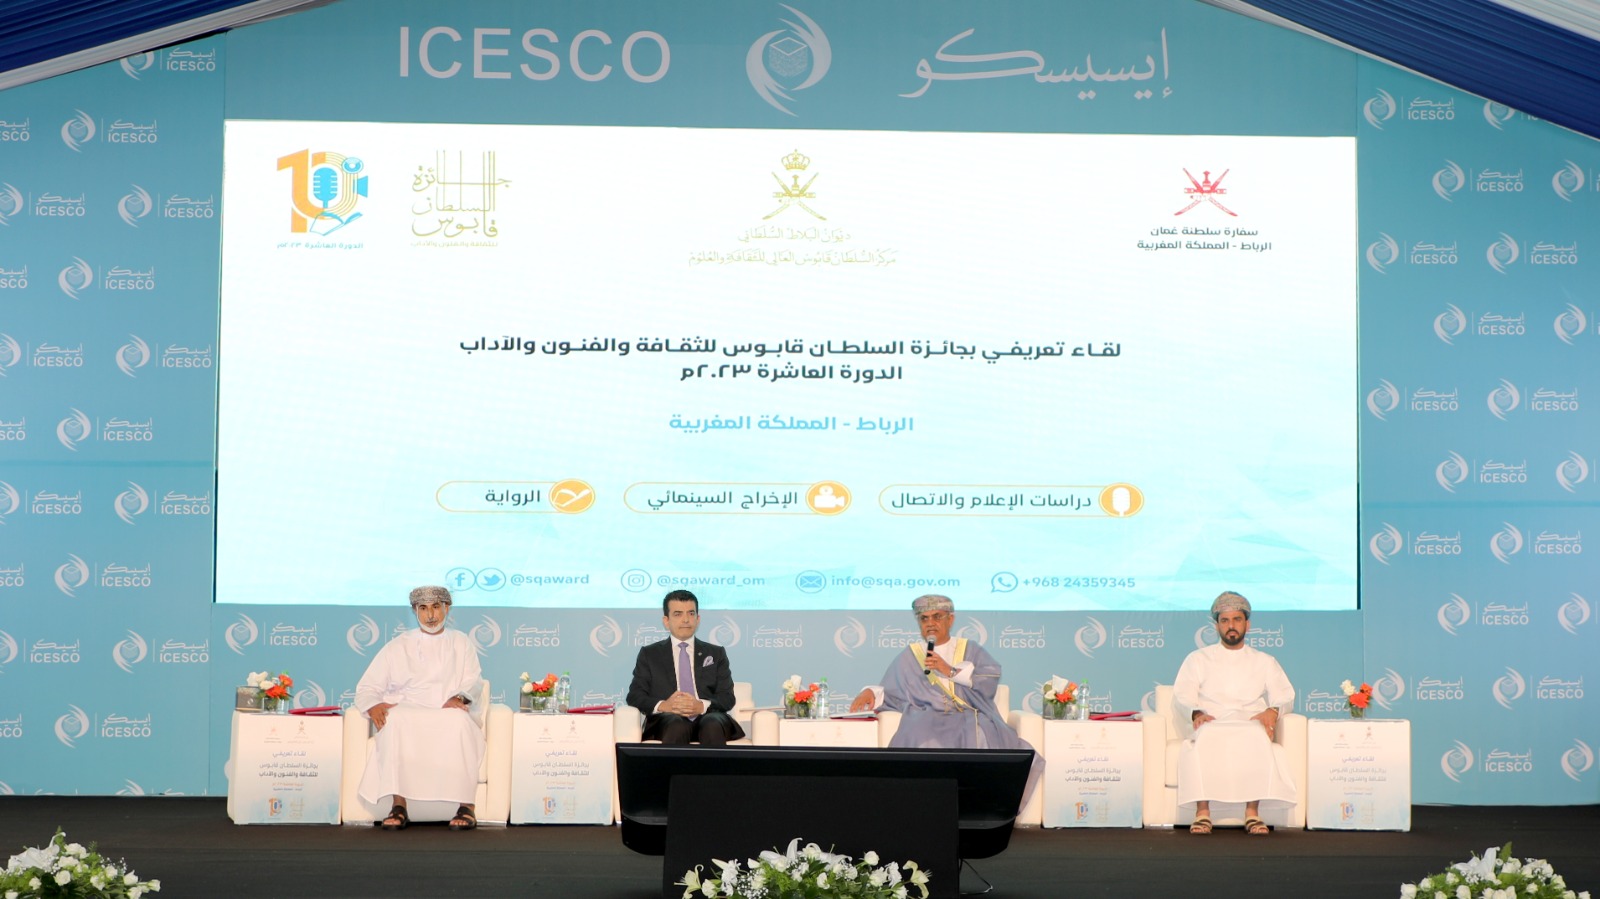 L’ICESCO organise une rencontre pour la présentation du Prix Sultan Qaboos pour la culture, les arts et la littérature